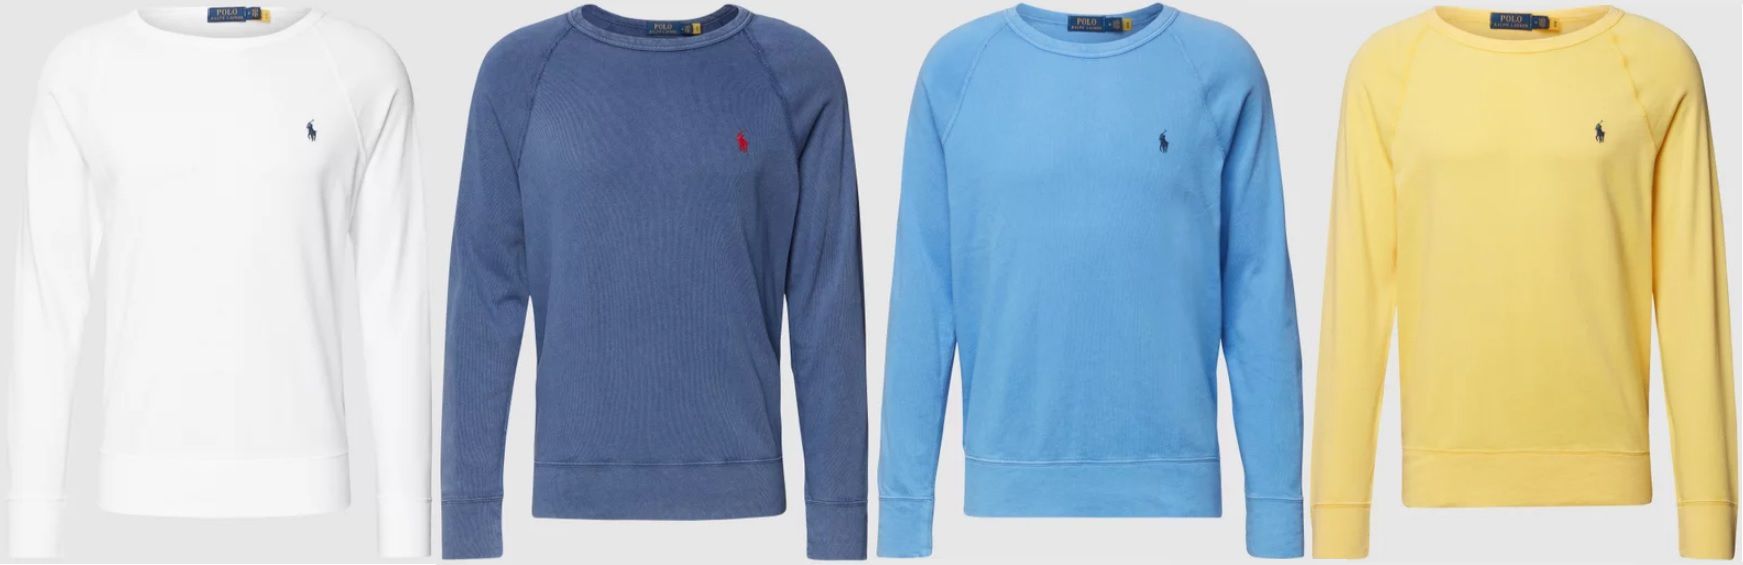 Polo Ralph Lauren Sweatshirt mit Brand Stitching in verschiedenen Farben für 67,99€ (statt 90€)